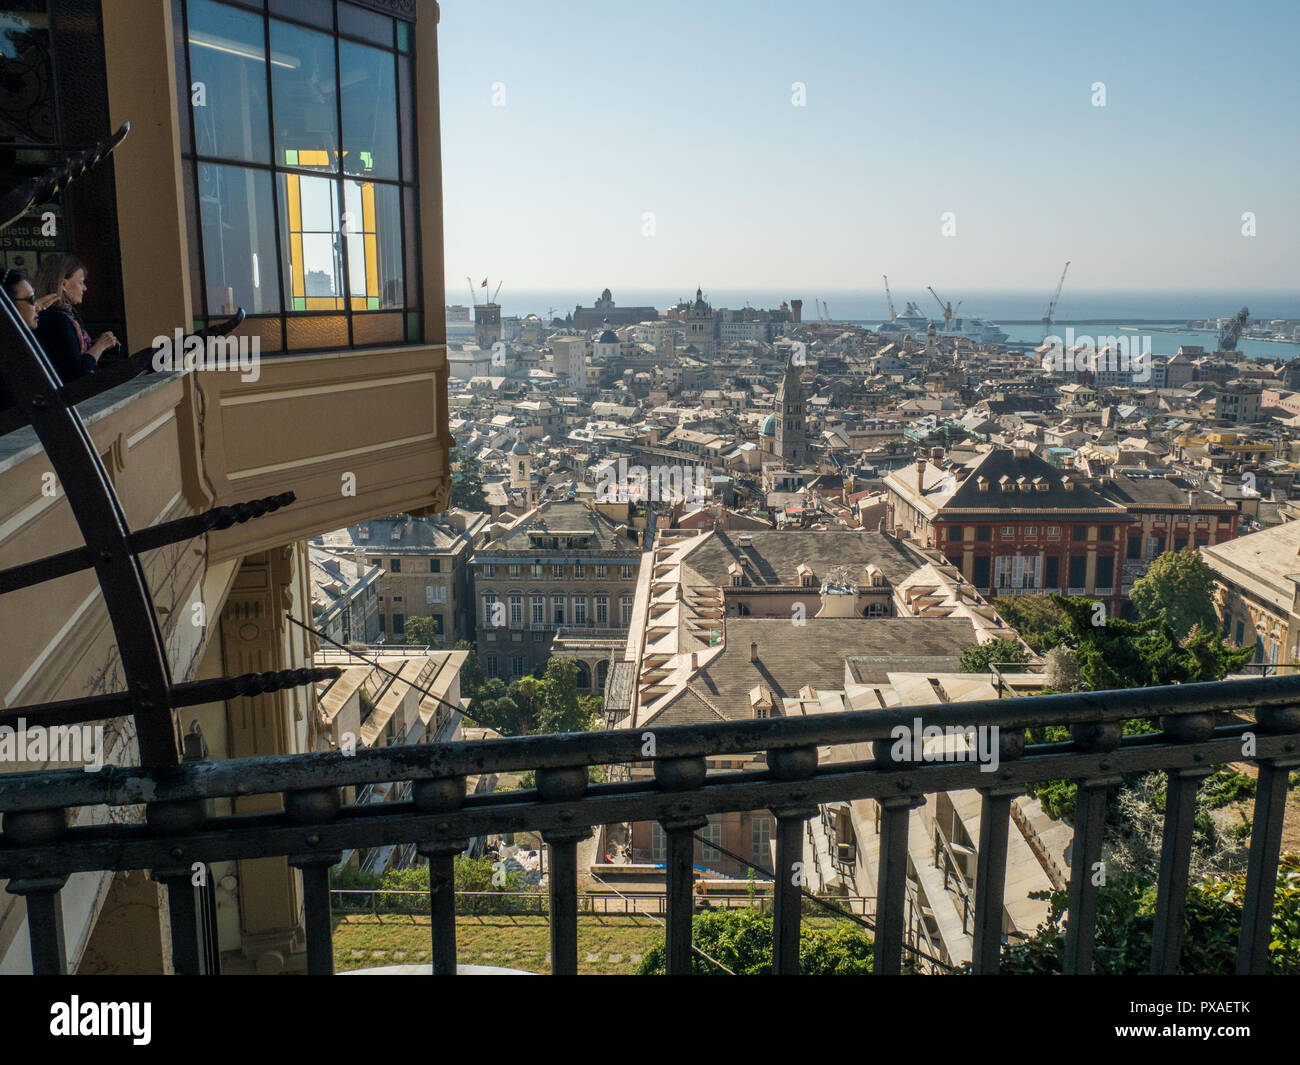 Genua aus Sicht Spianata Castelletto, durch den Aufzug auf der linken Seite oder über Stufen erreichbar. Palazzo Rosso rechts. Ligurien, Italien Stockfoto